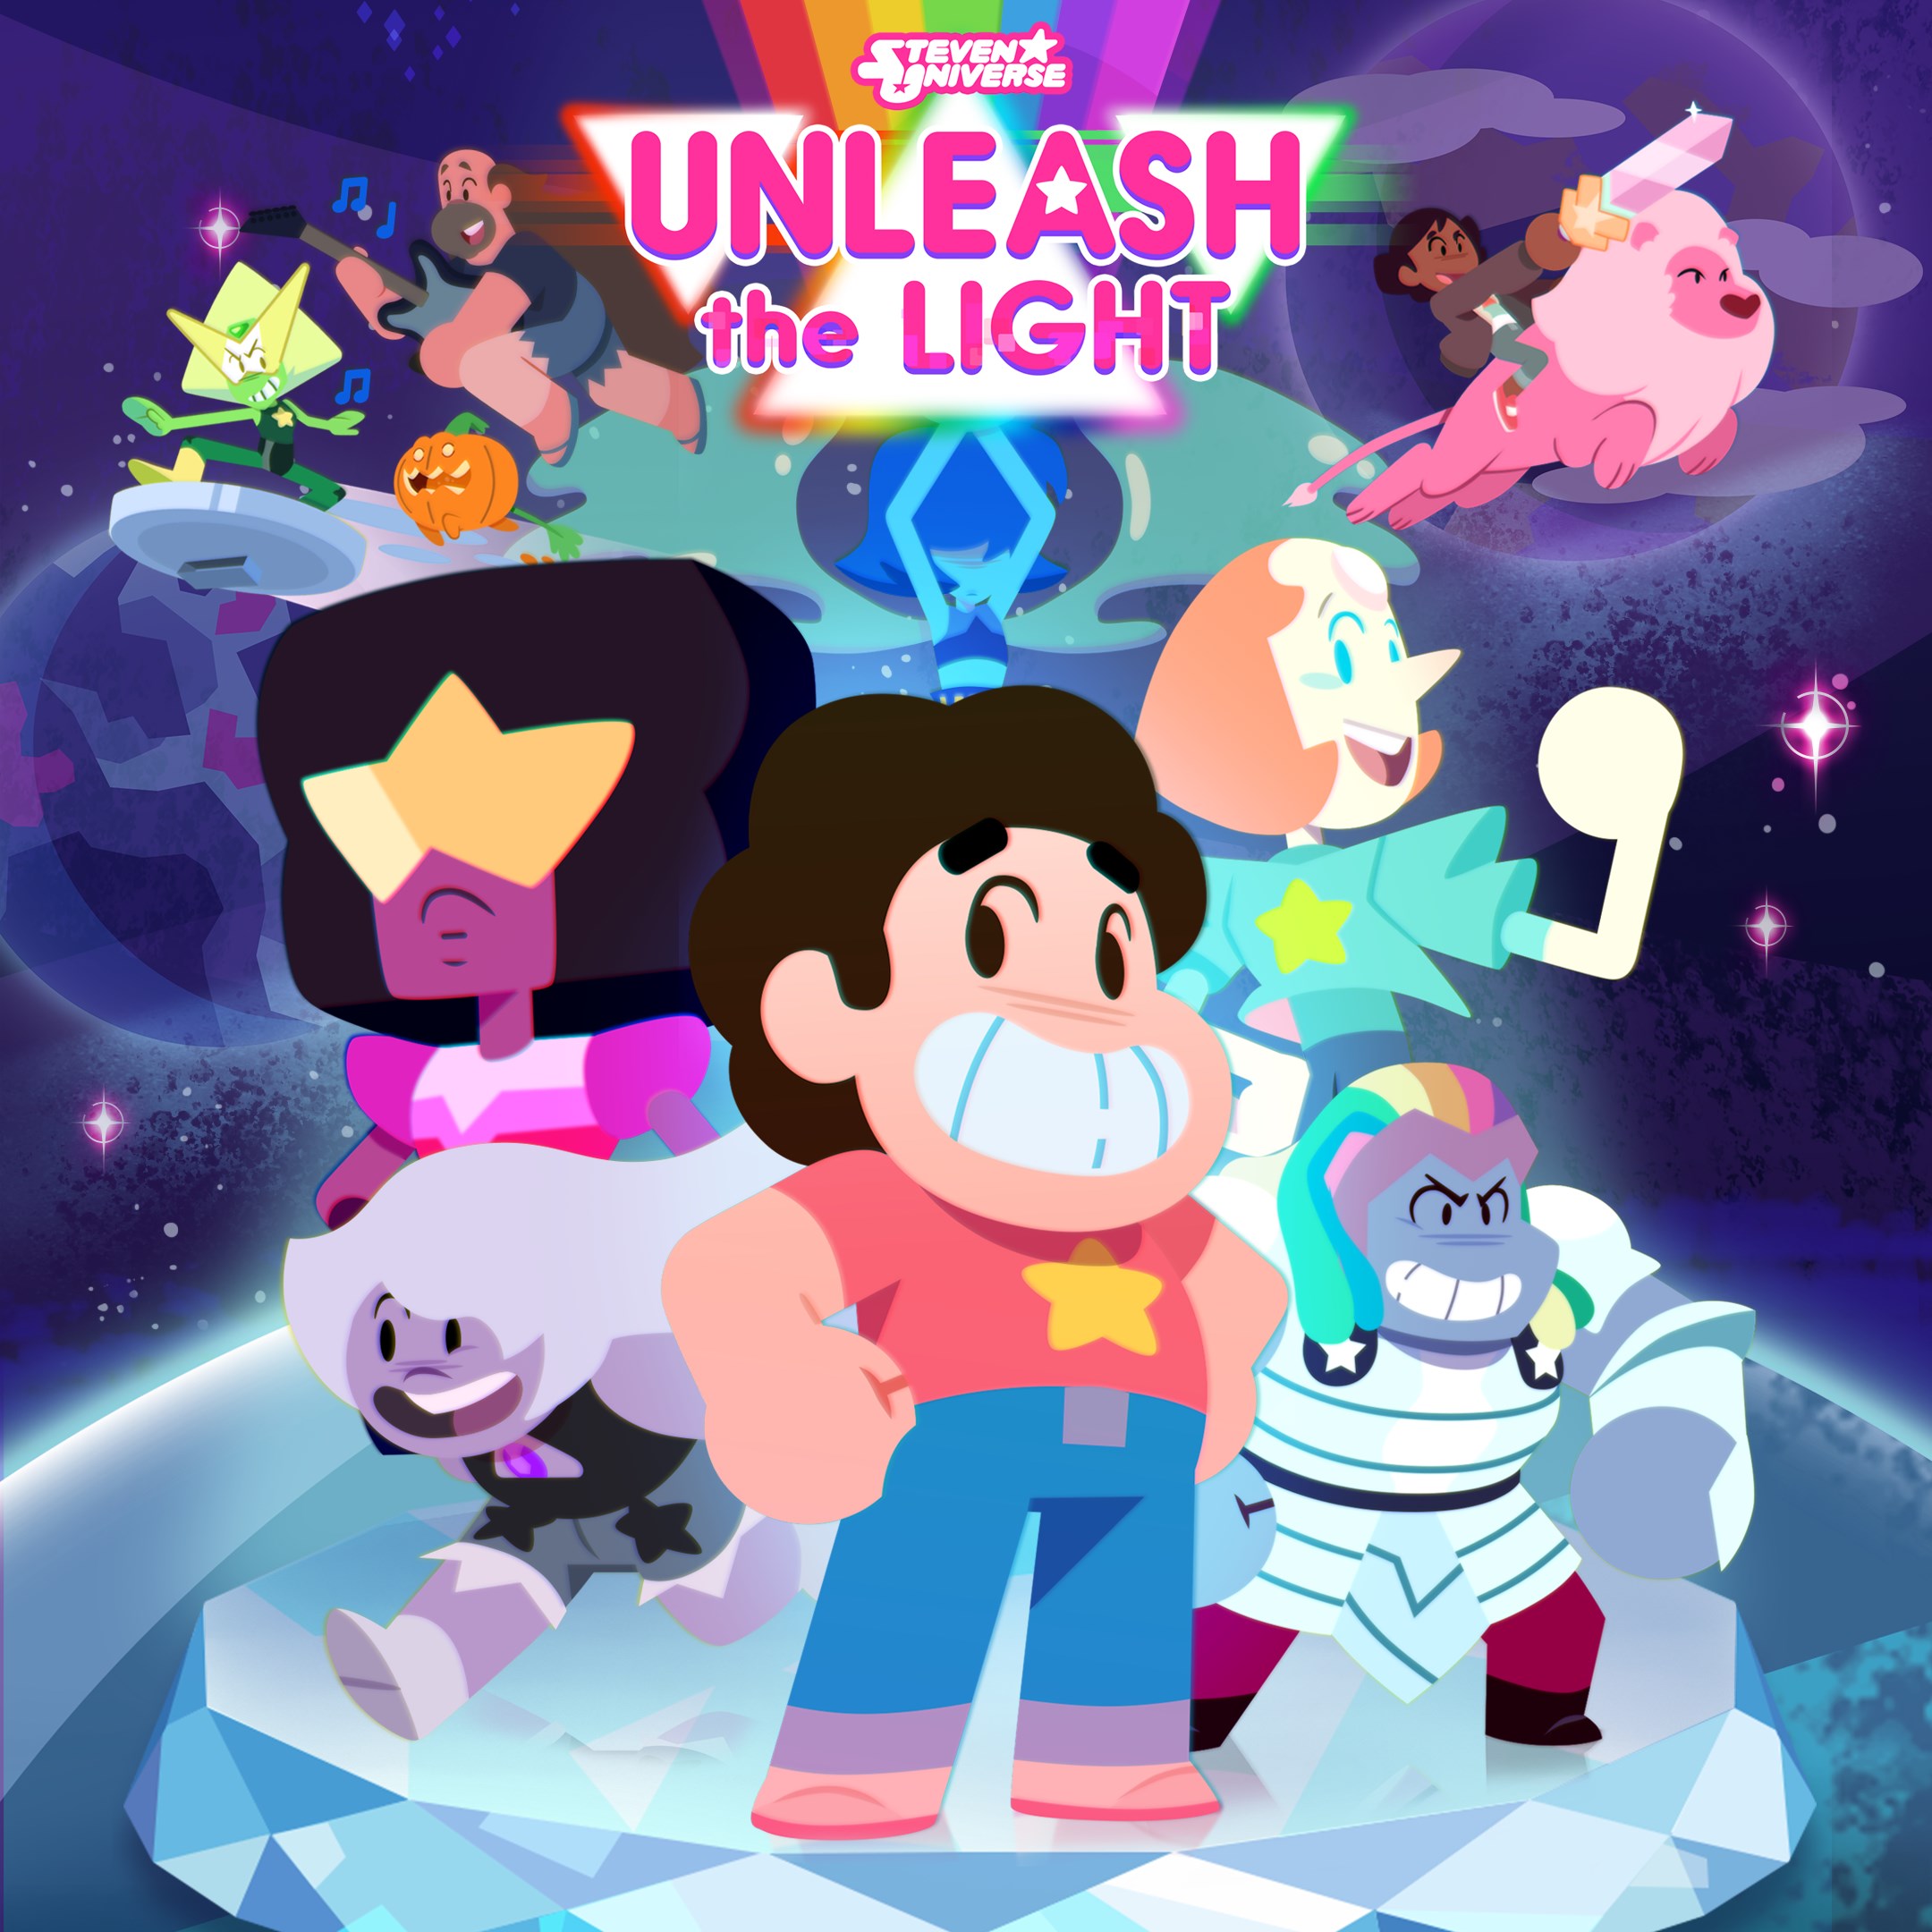 Steven Universe Unleash the Light